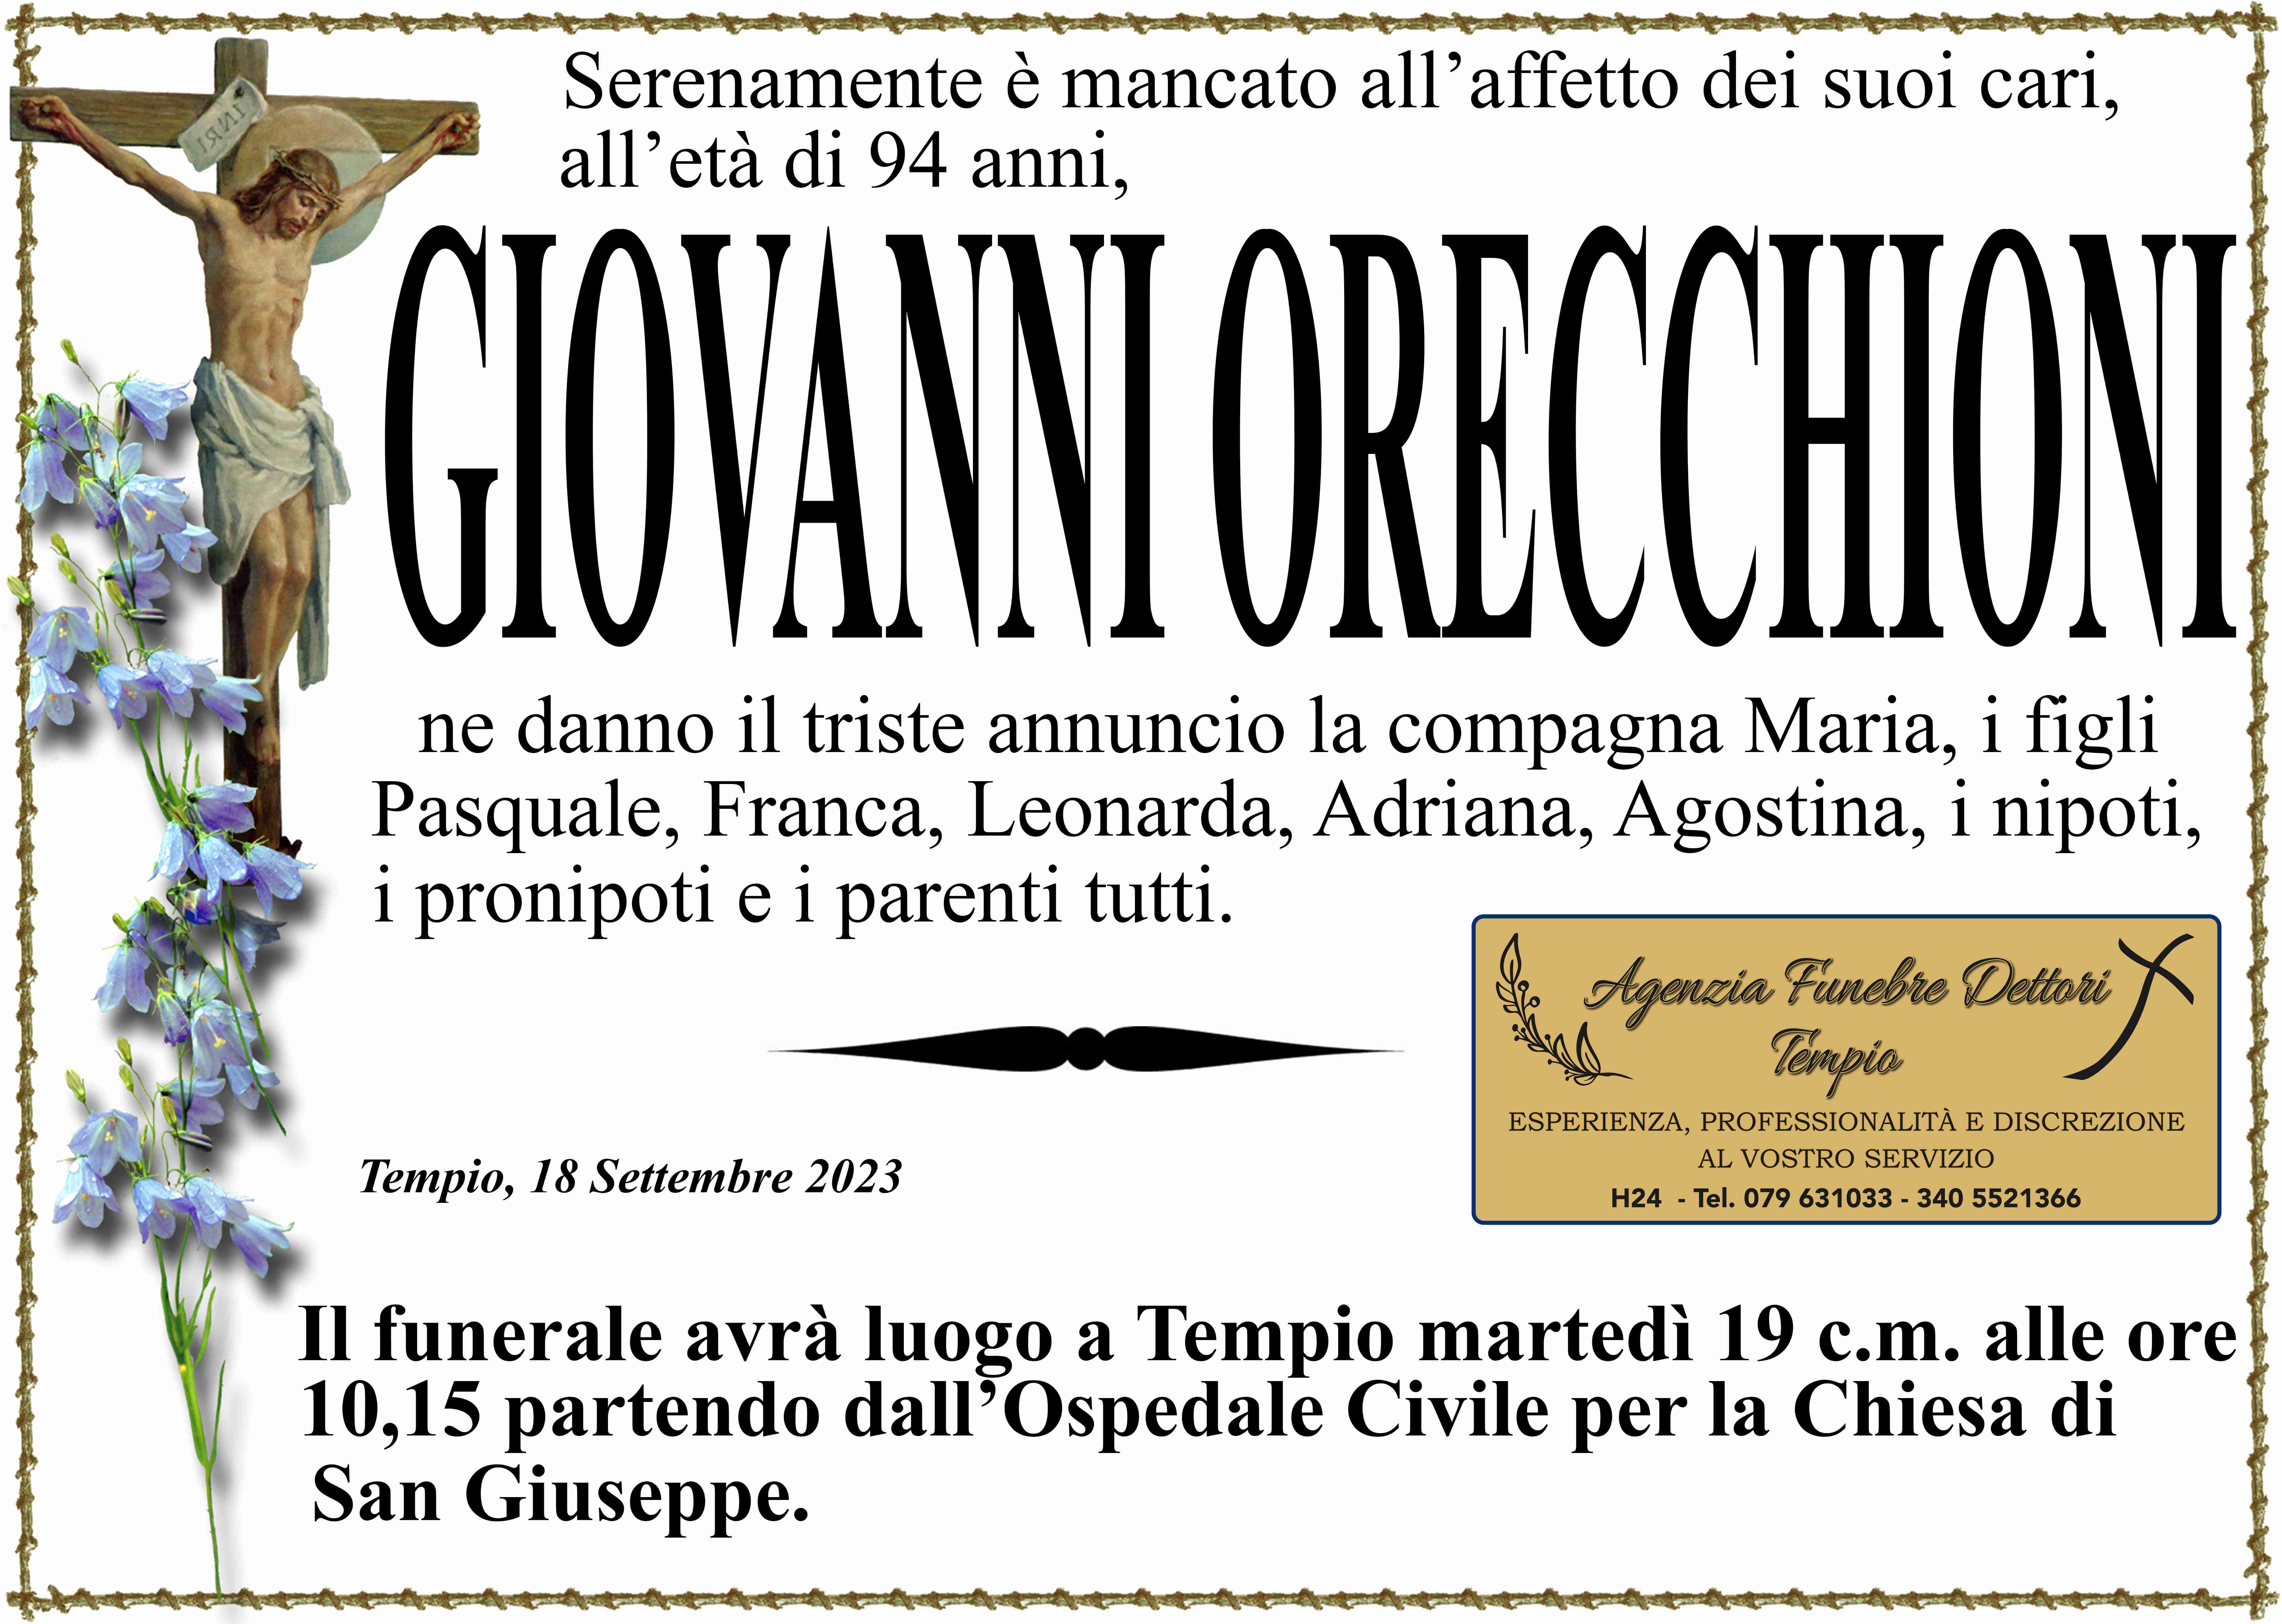 Giovanni Orecchioni